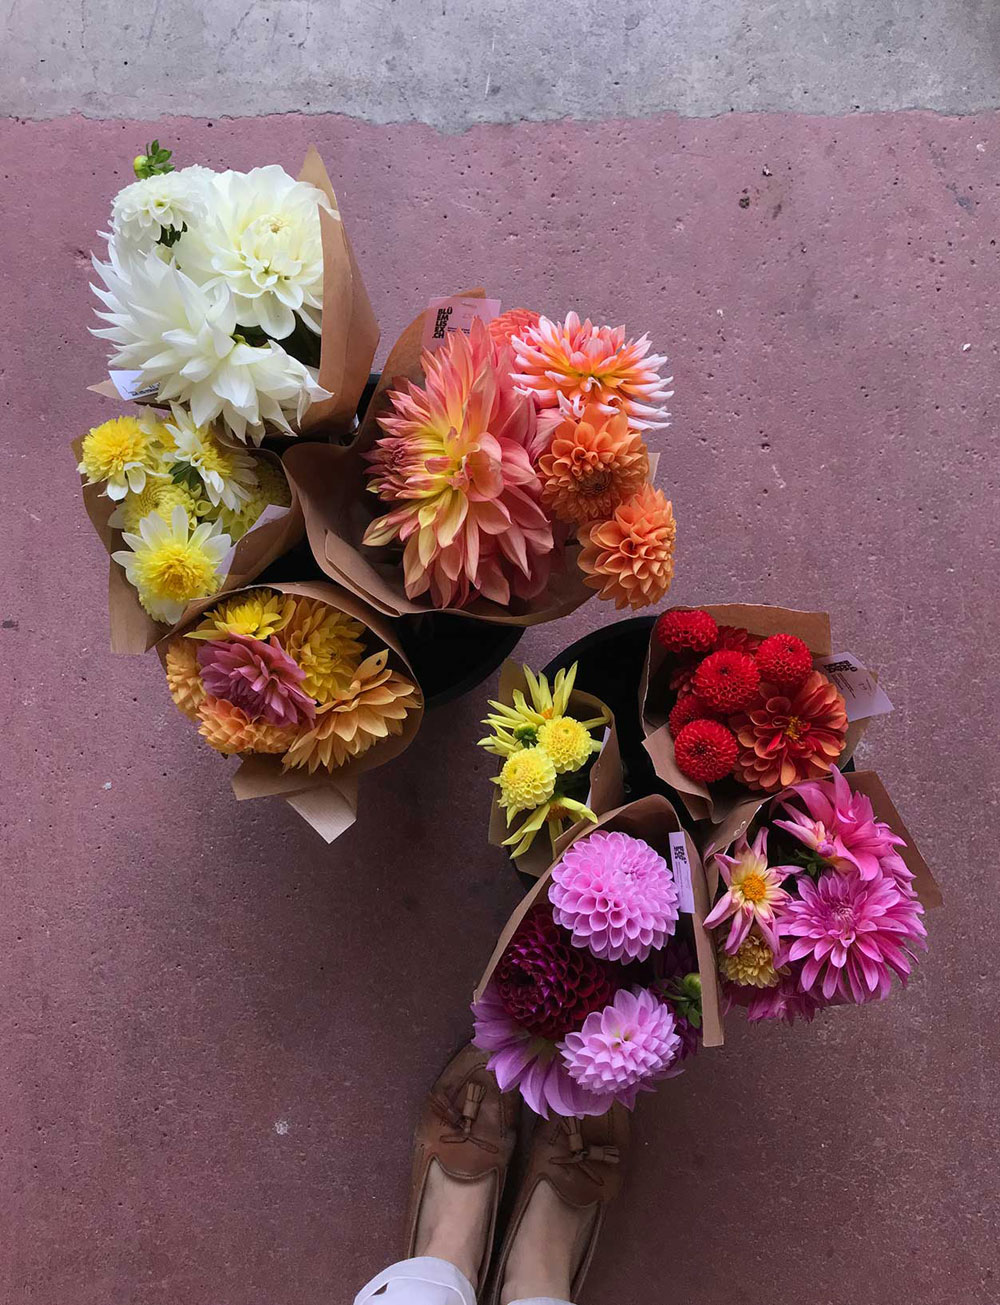 Flowerpower und Frauenpower: sonrisa verlost zwei Bons für den Onlineshop Bluemlisex von Girlboss Ulrike, die nachhaltige Blumen aus der Schweiz anbietet.